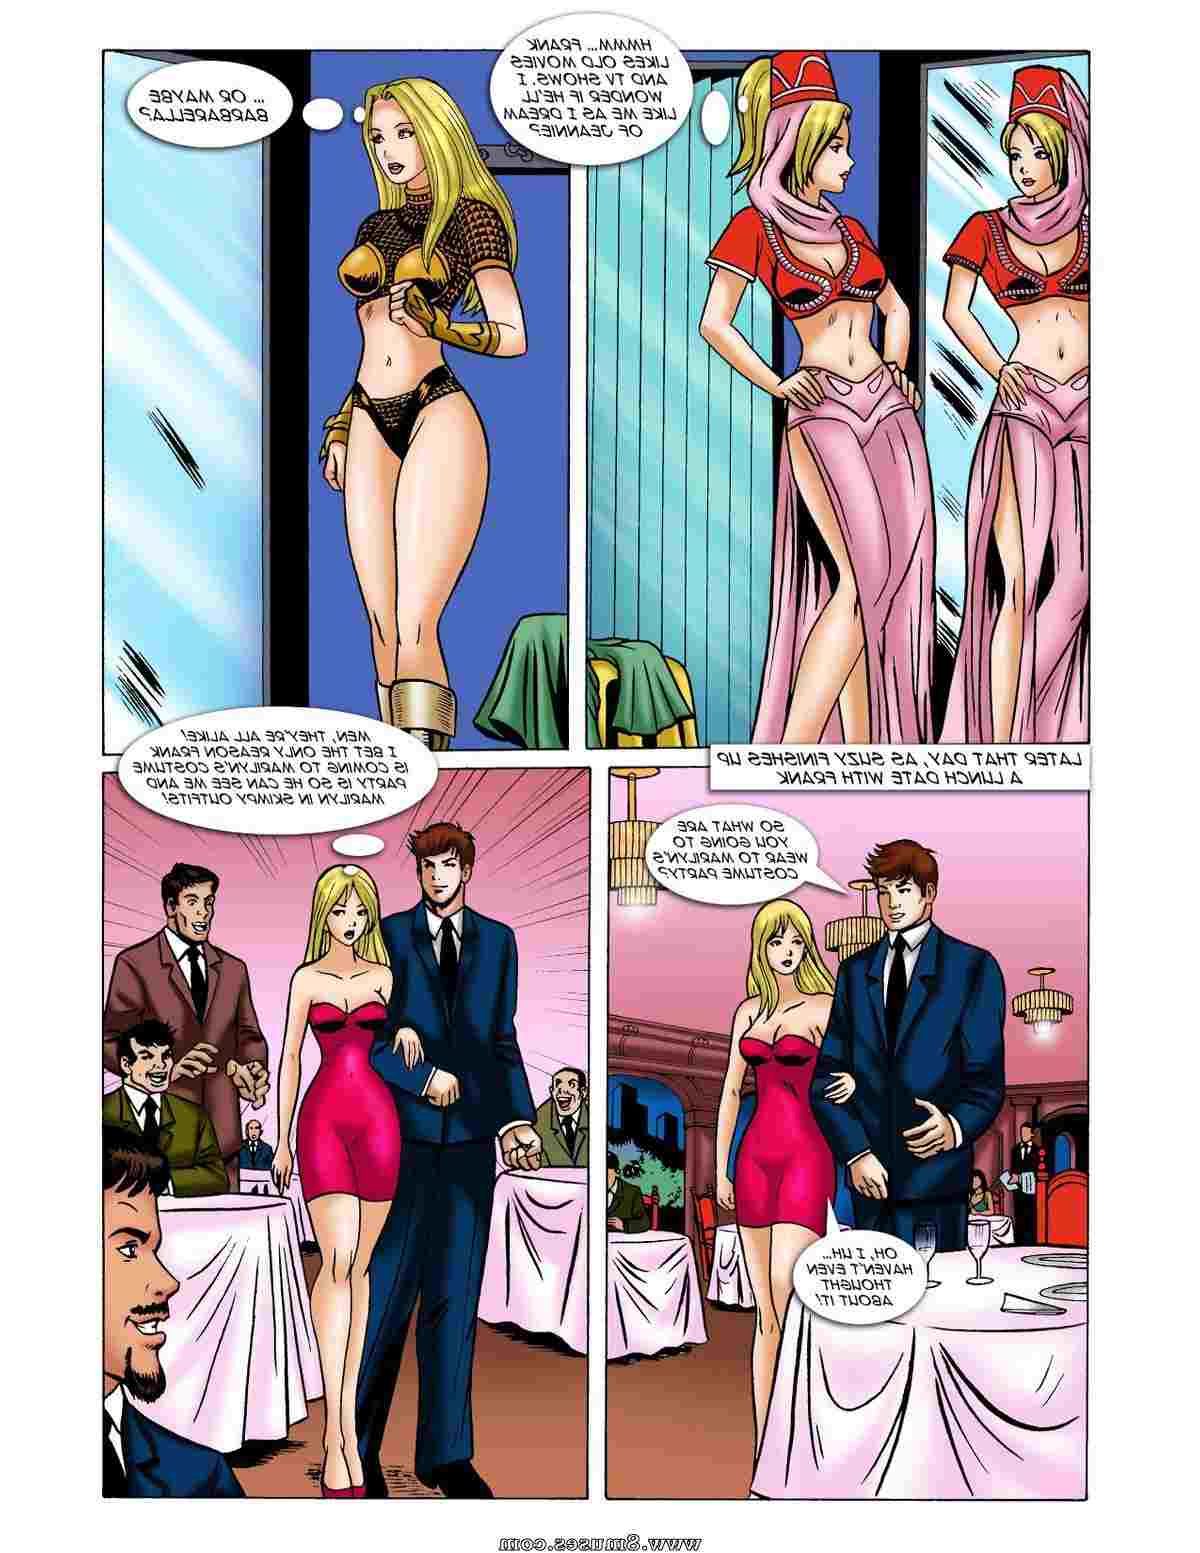 DreamTales-Comics/Eenie-Meanie-Marilyn Eenie_Meanie_Marilyn__8muses_-_Sex_and_Porn_Comics_3.jpg